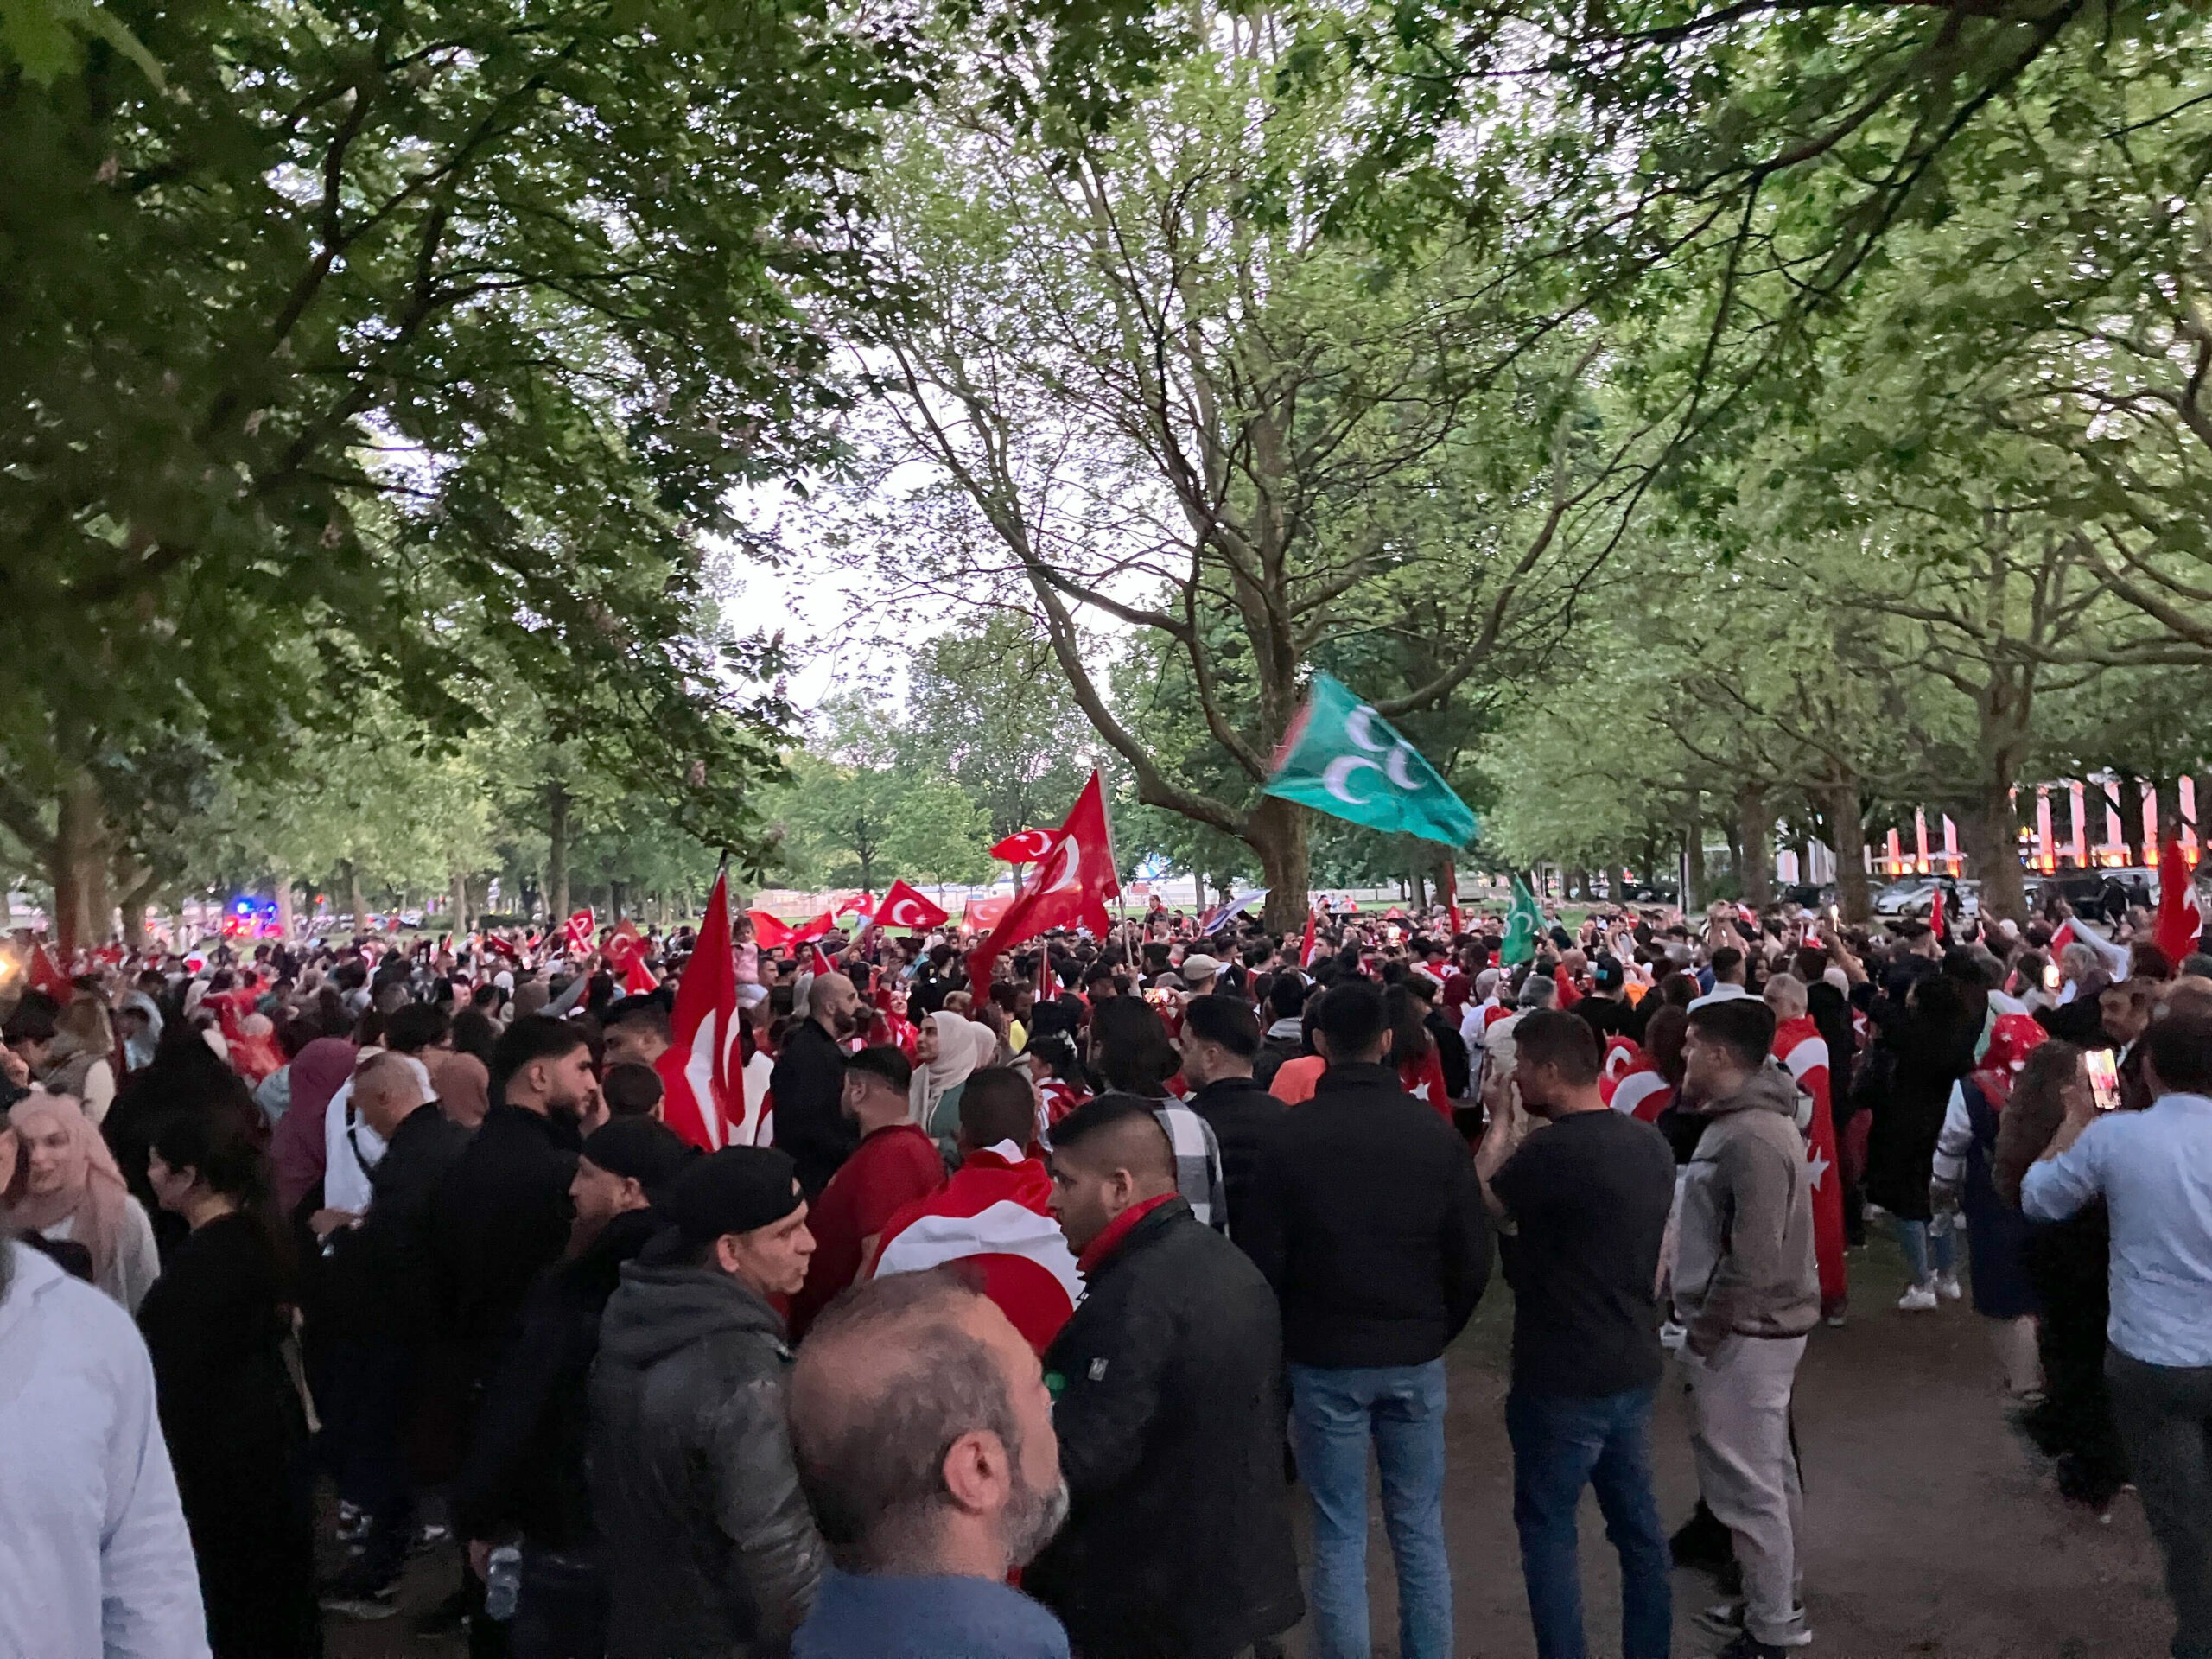 Nach Polizeiangaben versammelten sich mehr als 1000 Menschen im Bereich des Türkischen Generalkonsulats, um den Wahlsieg von Recep Tayyip Erdogan zu feiern.